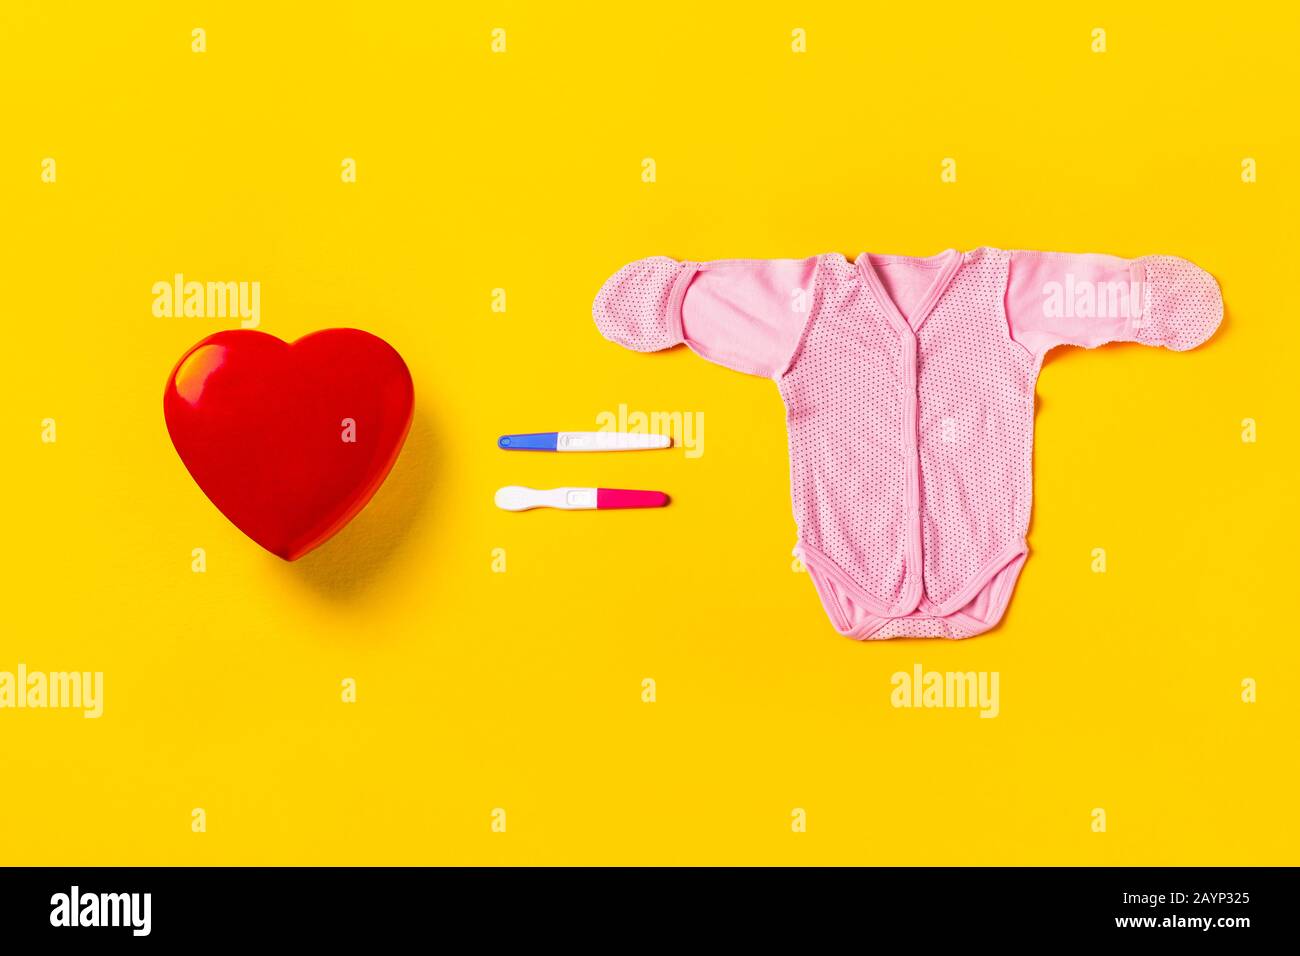 El amor es igual a la procreación. Corazón rojo, dos pruebas de embarazo en forma de igual y traje de bebé sobre un fondo amarillo. Concepto de creación familiar. Foto de stock